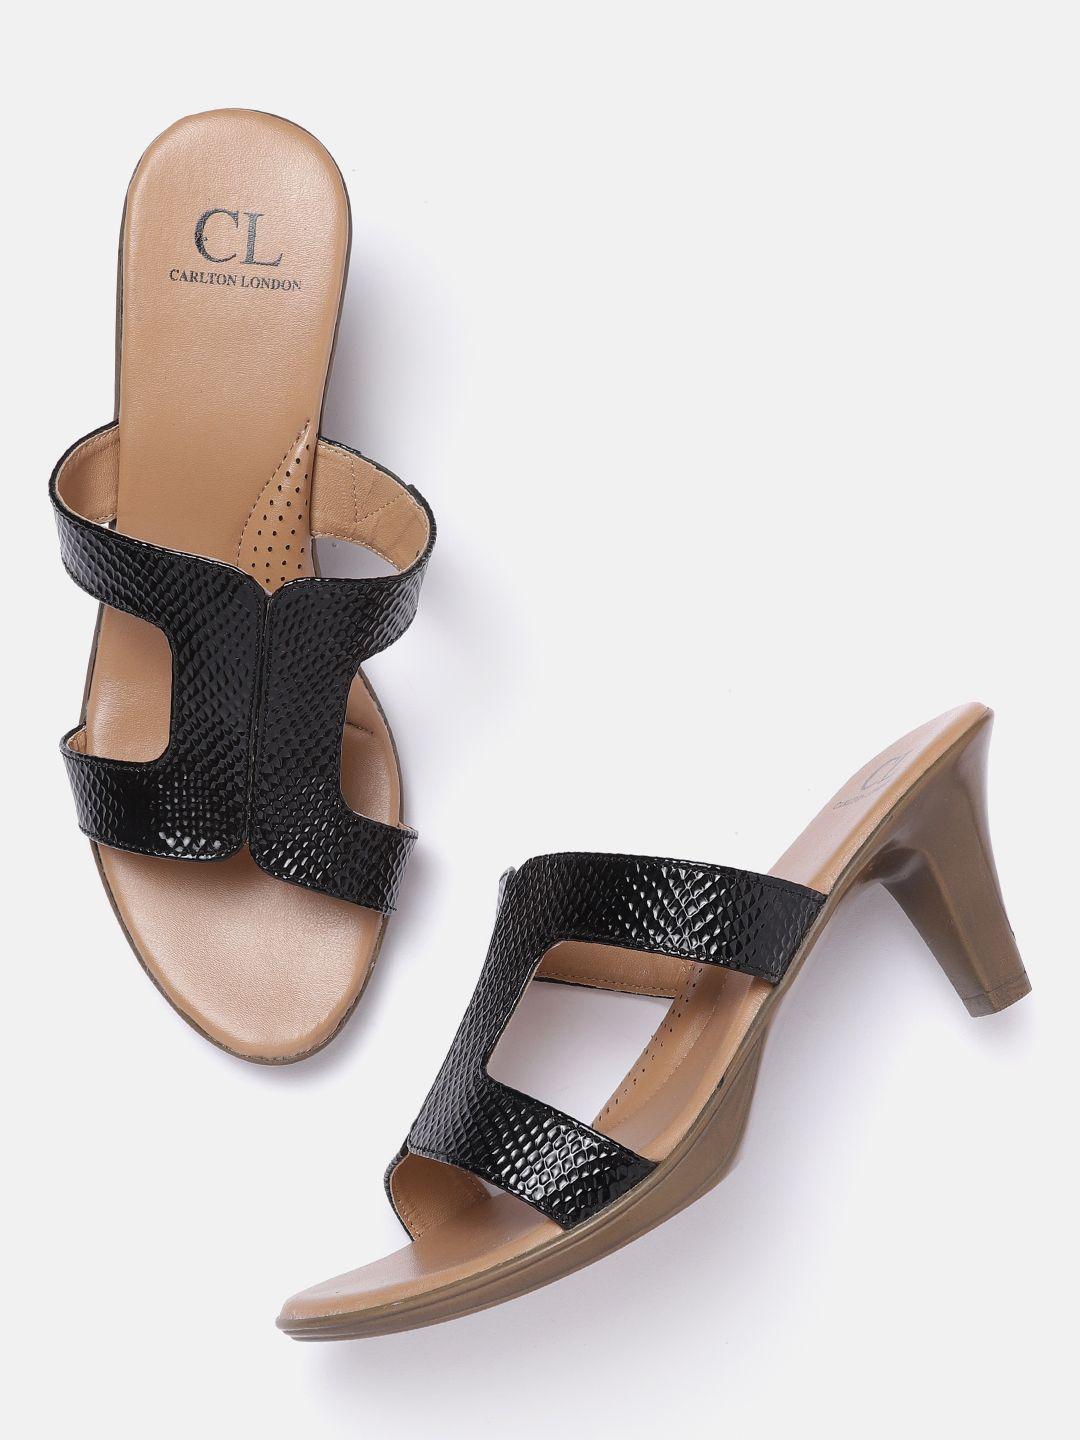 carlton-london-women-black-snake-skin-textured-heels